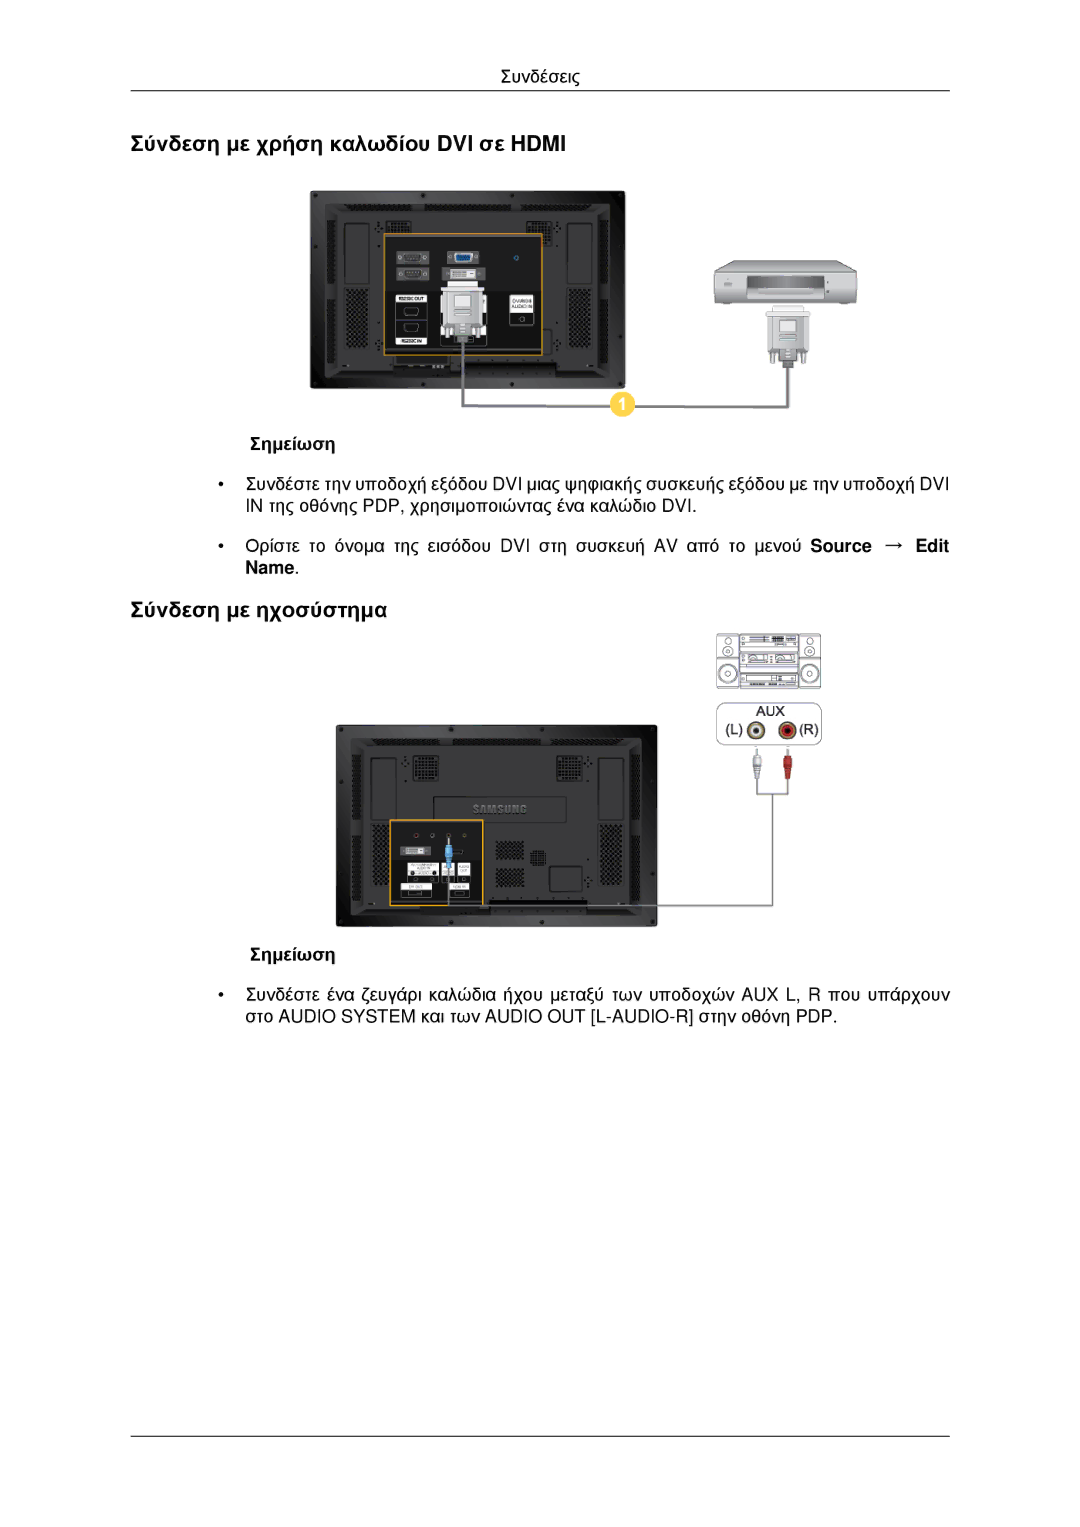 Samsung PH42KPPLBC/EN manual Σύνδεση με χρήση καλωδίου DVI σε Hdmi, Σύνδεση με ηχοσύστημα 